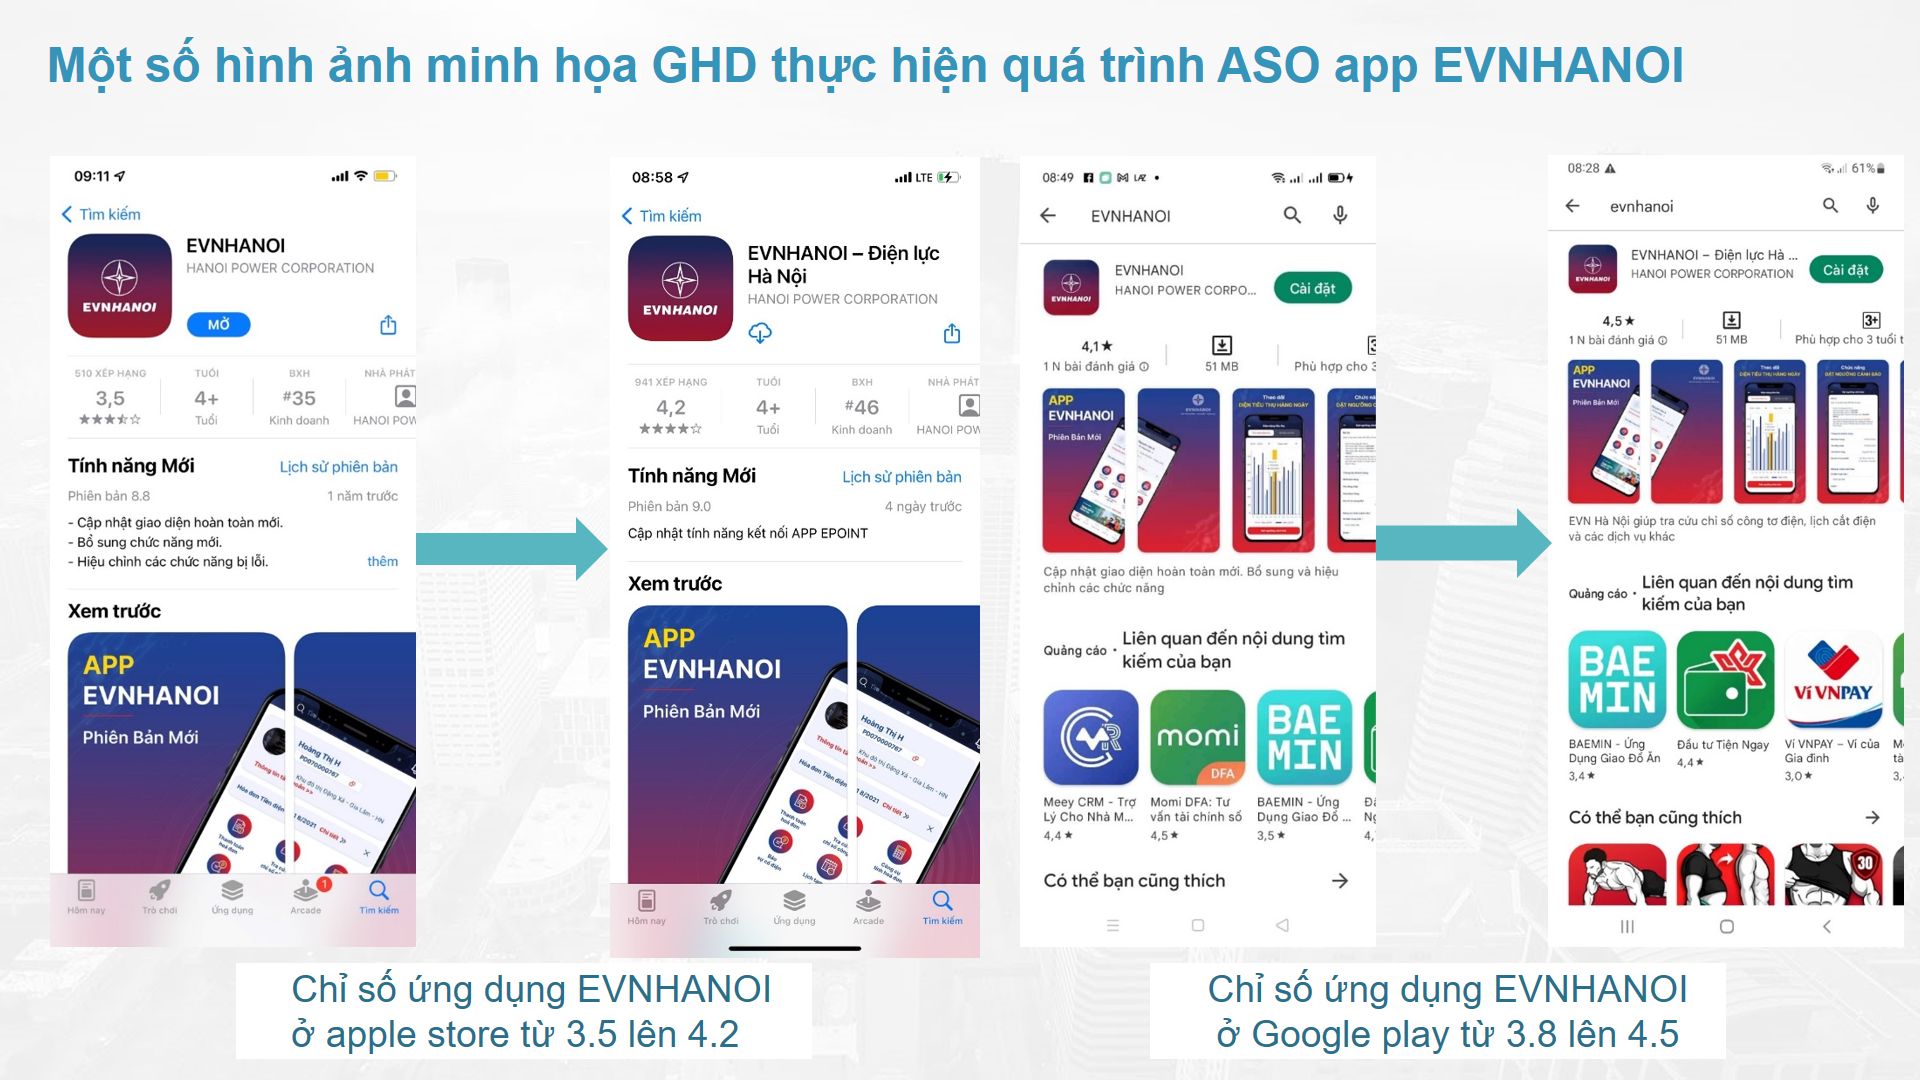 Dự án: Tối ưu ứng dụng (ASO) App EVNHANOI-Điện lực Hà Nội